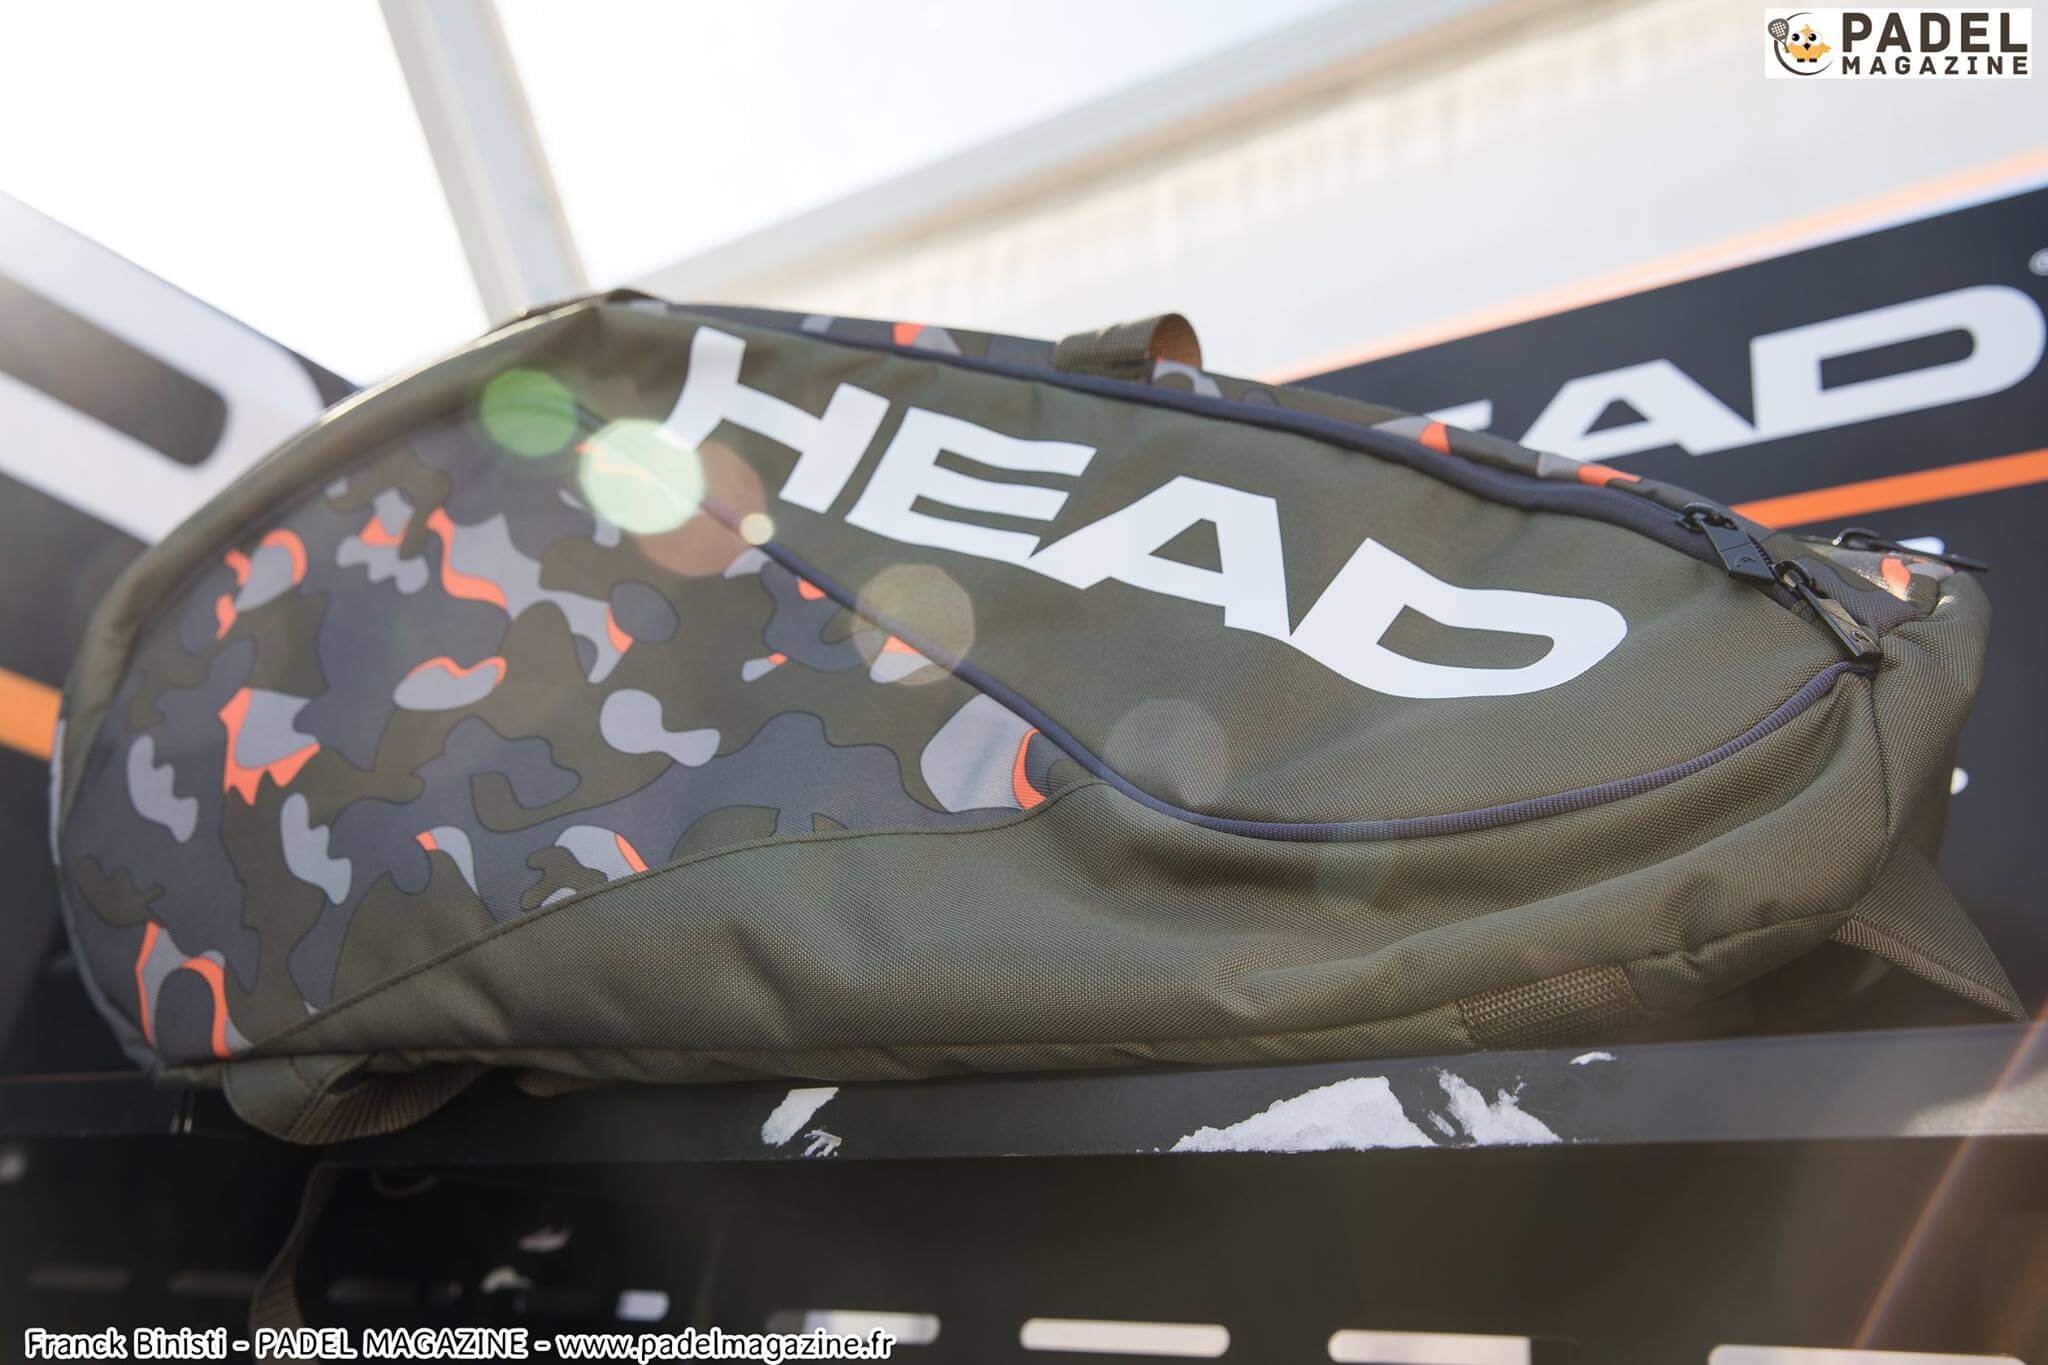 Le sac Head Padel 2018 unveiled